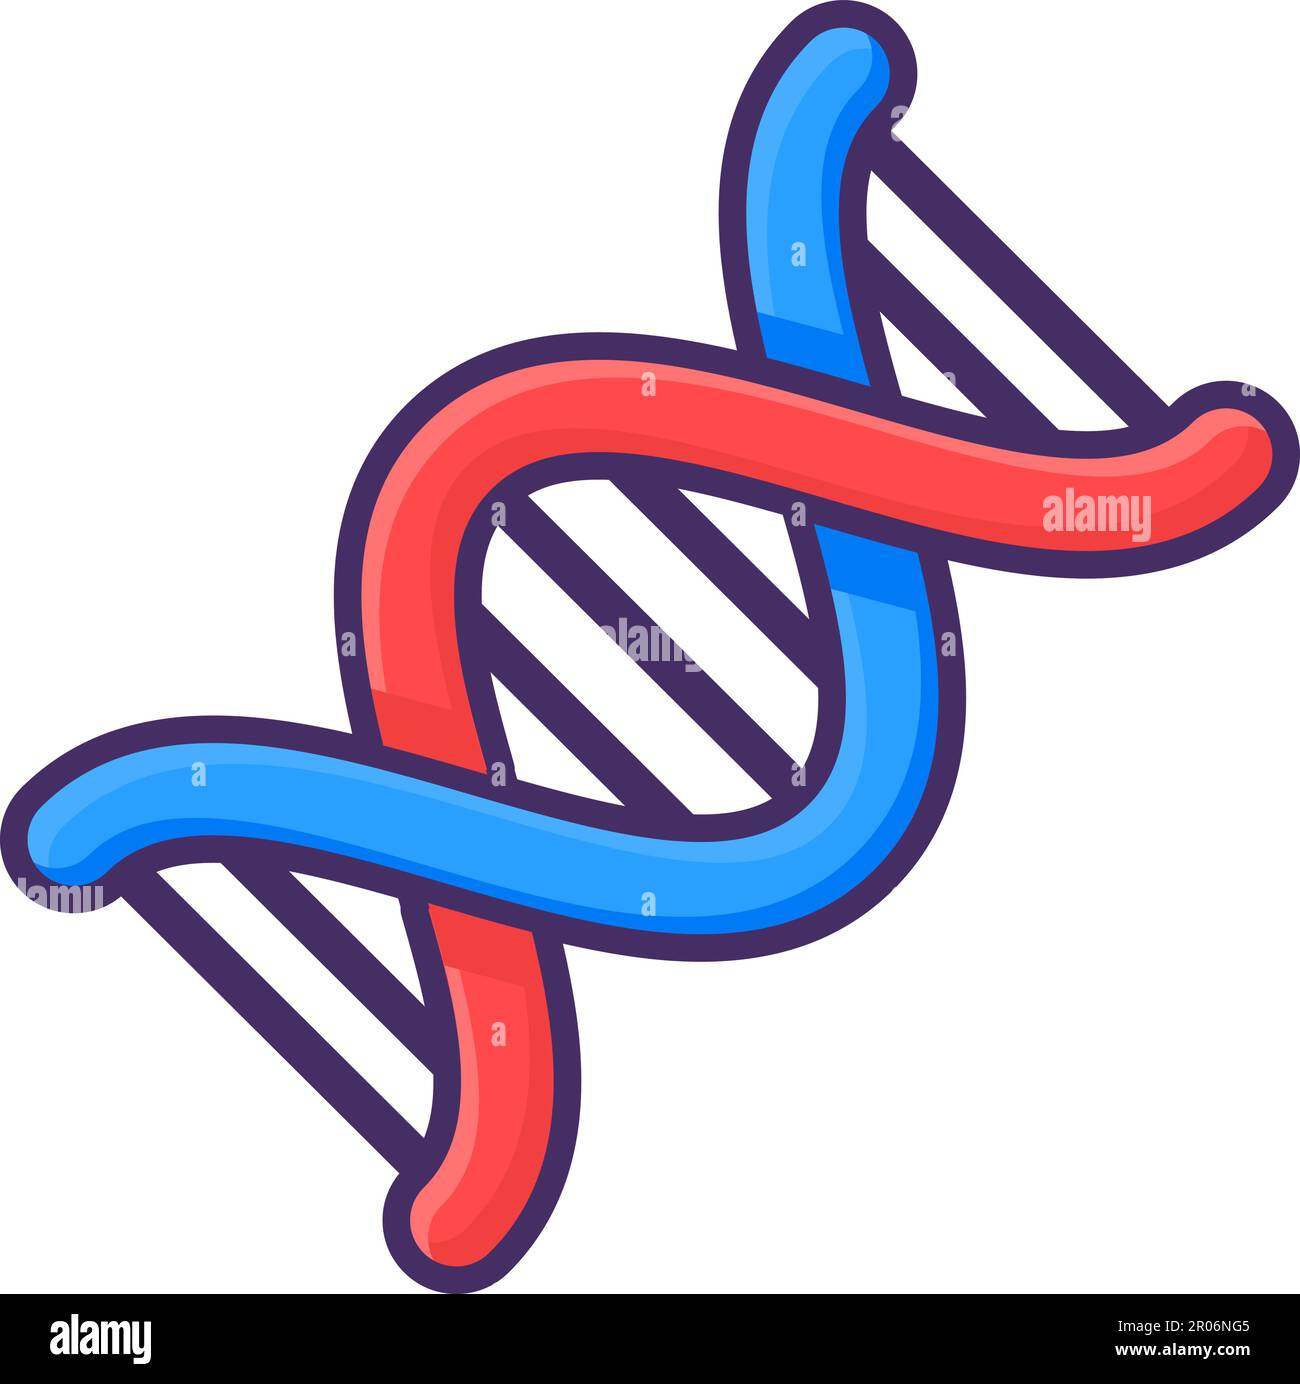 Helikale DNA-Molekül-verbundene chemische Bindung. Untersuchungen über Struktur und Zusammensetzung von Zellen und Proteinen im biologischen Laboratorium. Einfacher Cartoon Outlin Stock Vektor